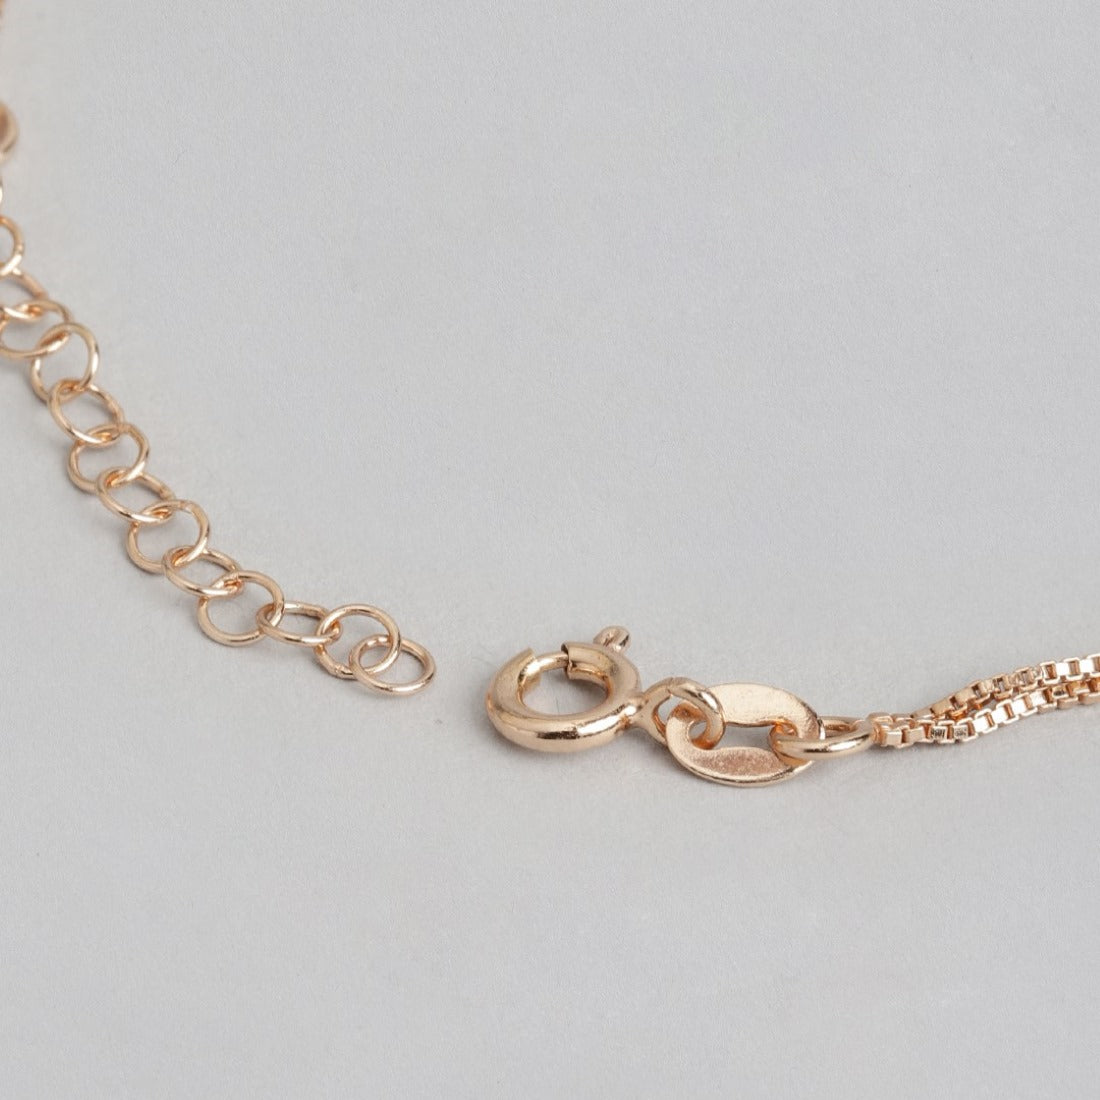 Heartfelt Affection Rose Gold-Plated 925 Sterling Silver Bracelet